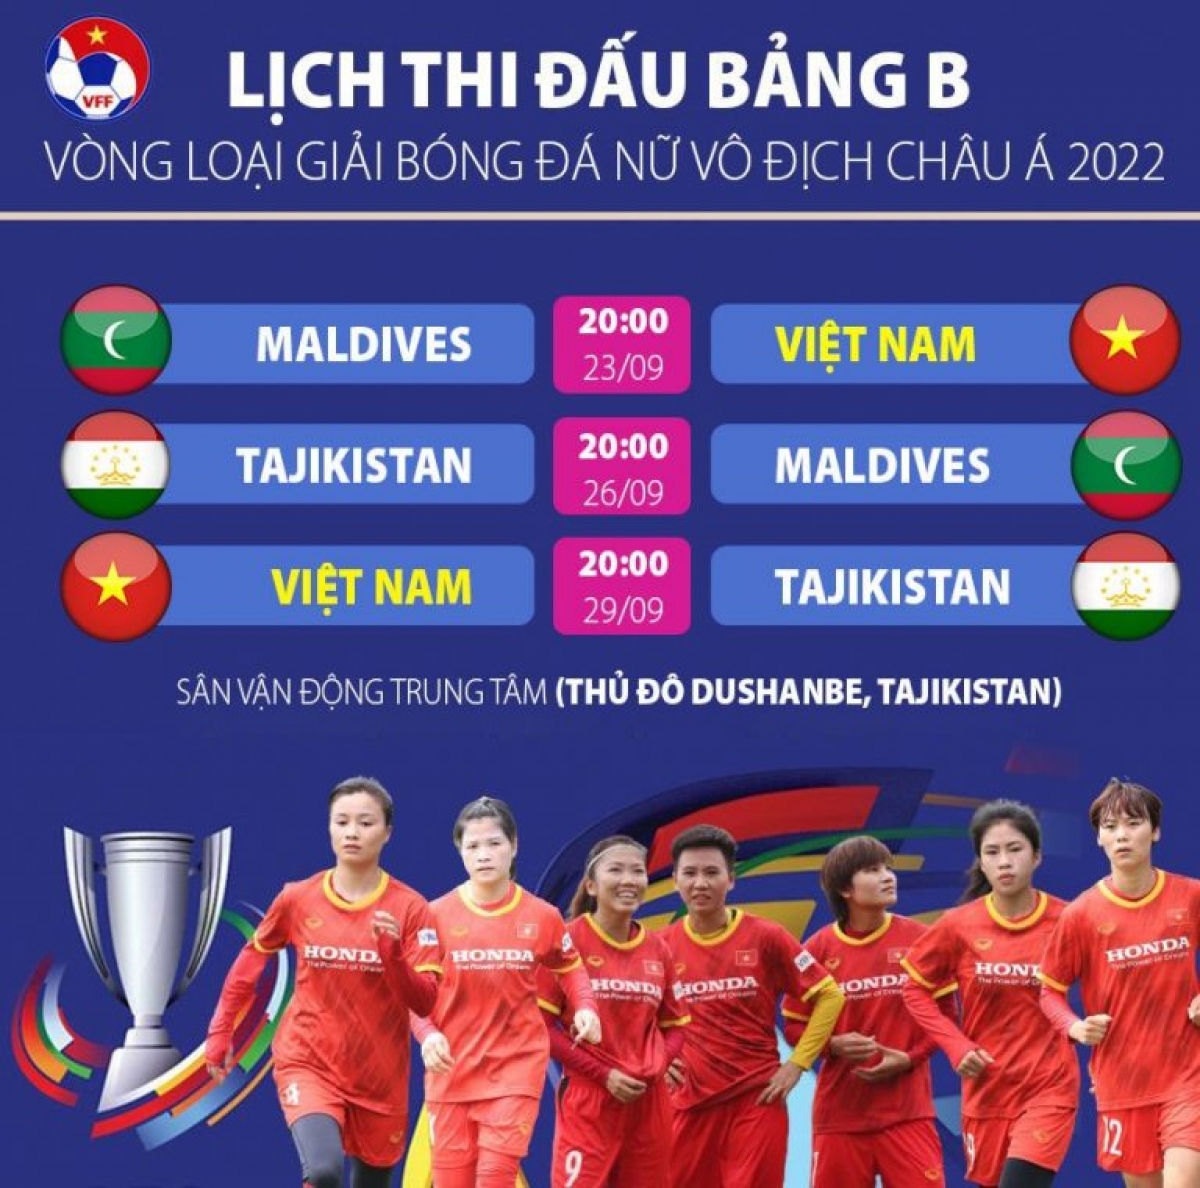 Lịch thi đấu của tuyển nữ Việt Nam tại vòng loại Giải bóng đá nữ châu Á 2022